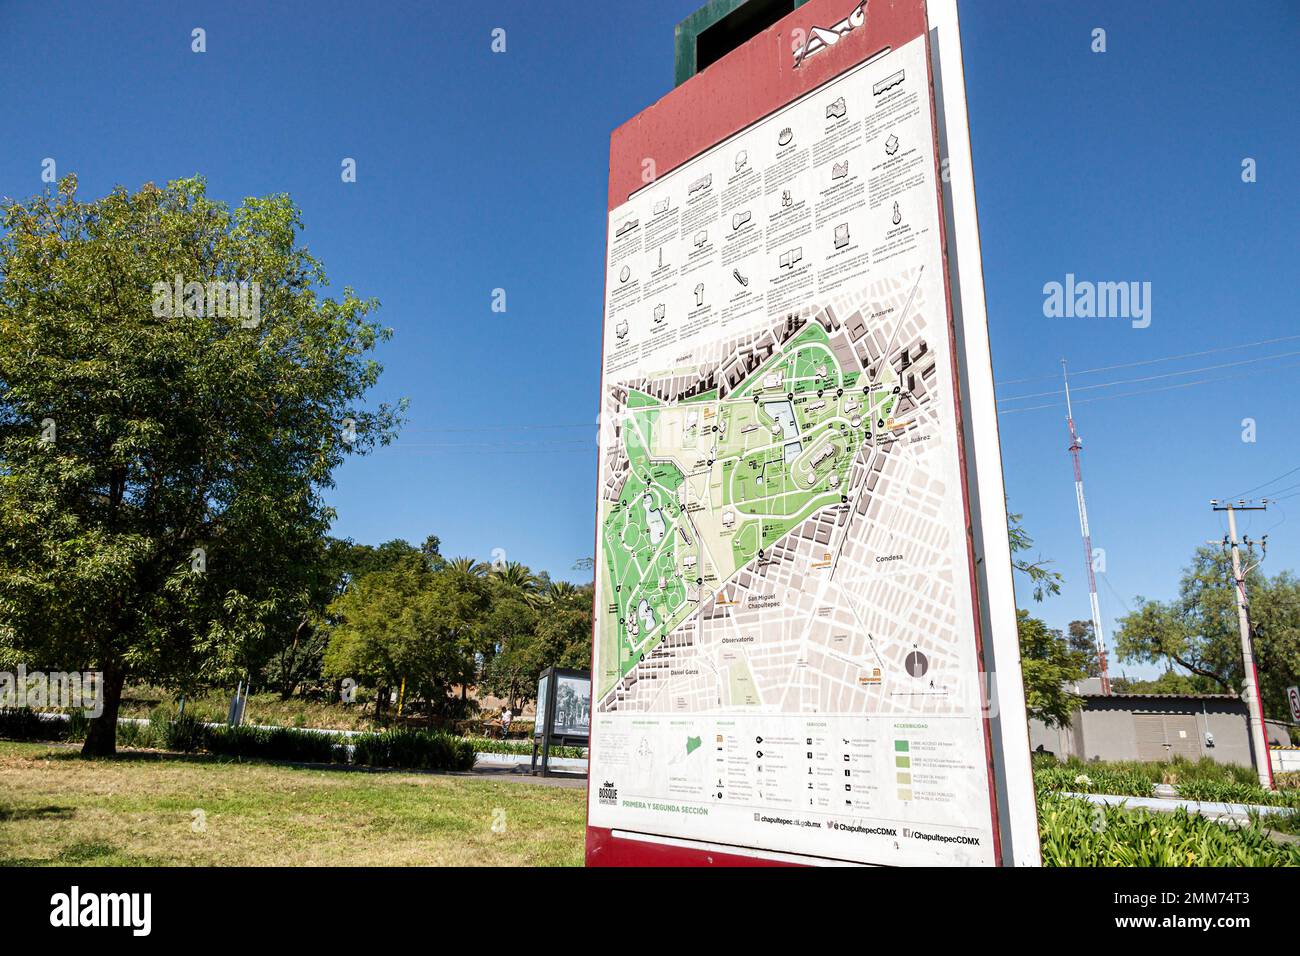 Mexiko-Stadt, Bosque de Chapultepec Abschnitt 2 Waldkarte, Schilder Informationen Plakatwand Stockfoto